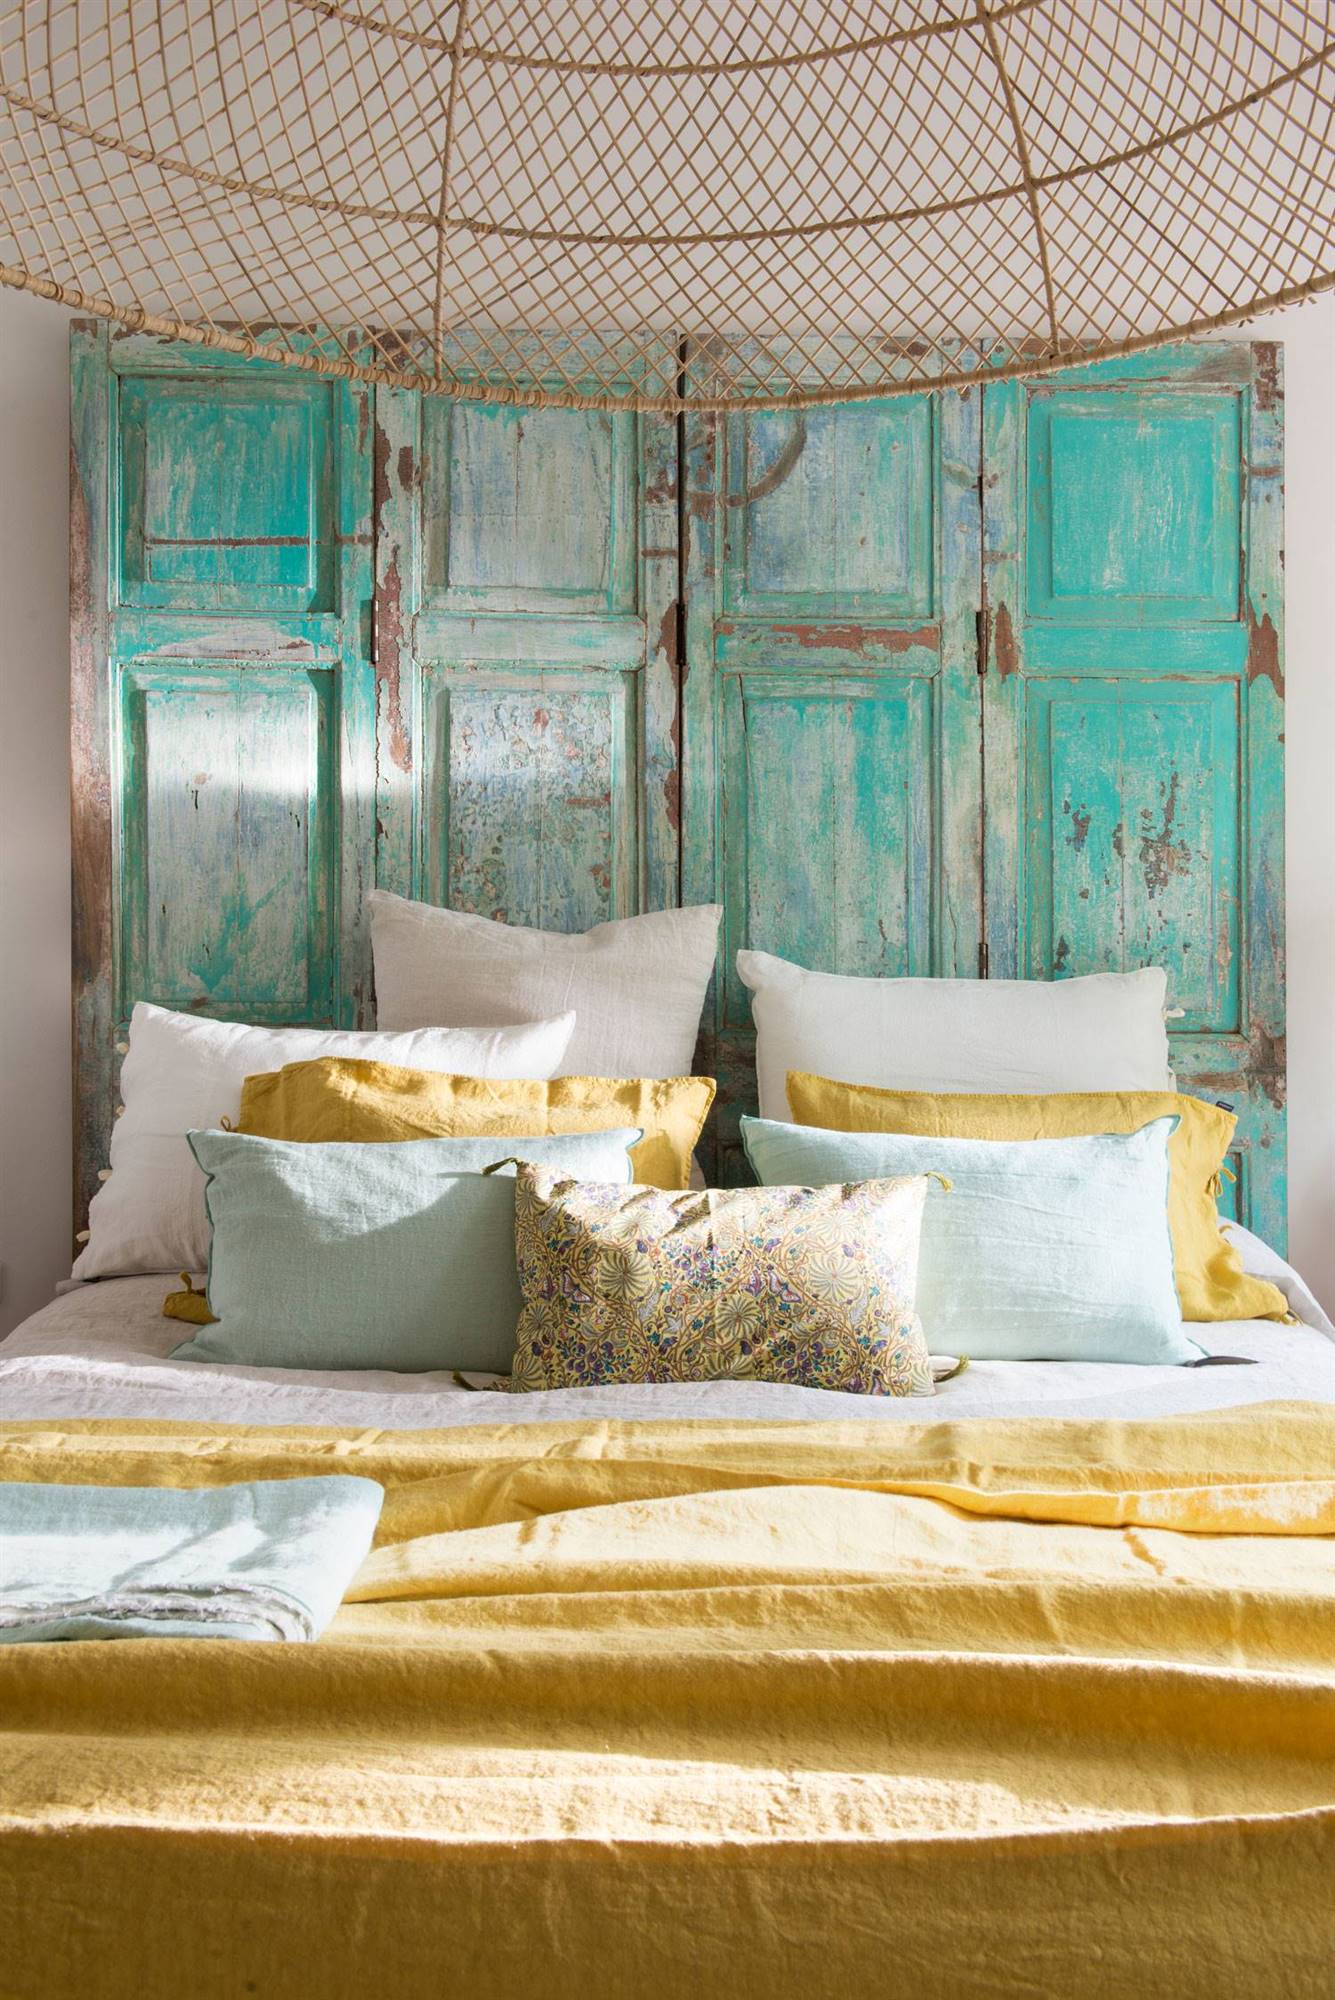 Dormitorio con colcha de verano de color mostaza y cabecero recuperado.  